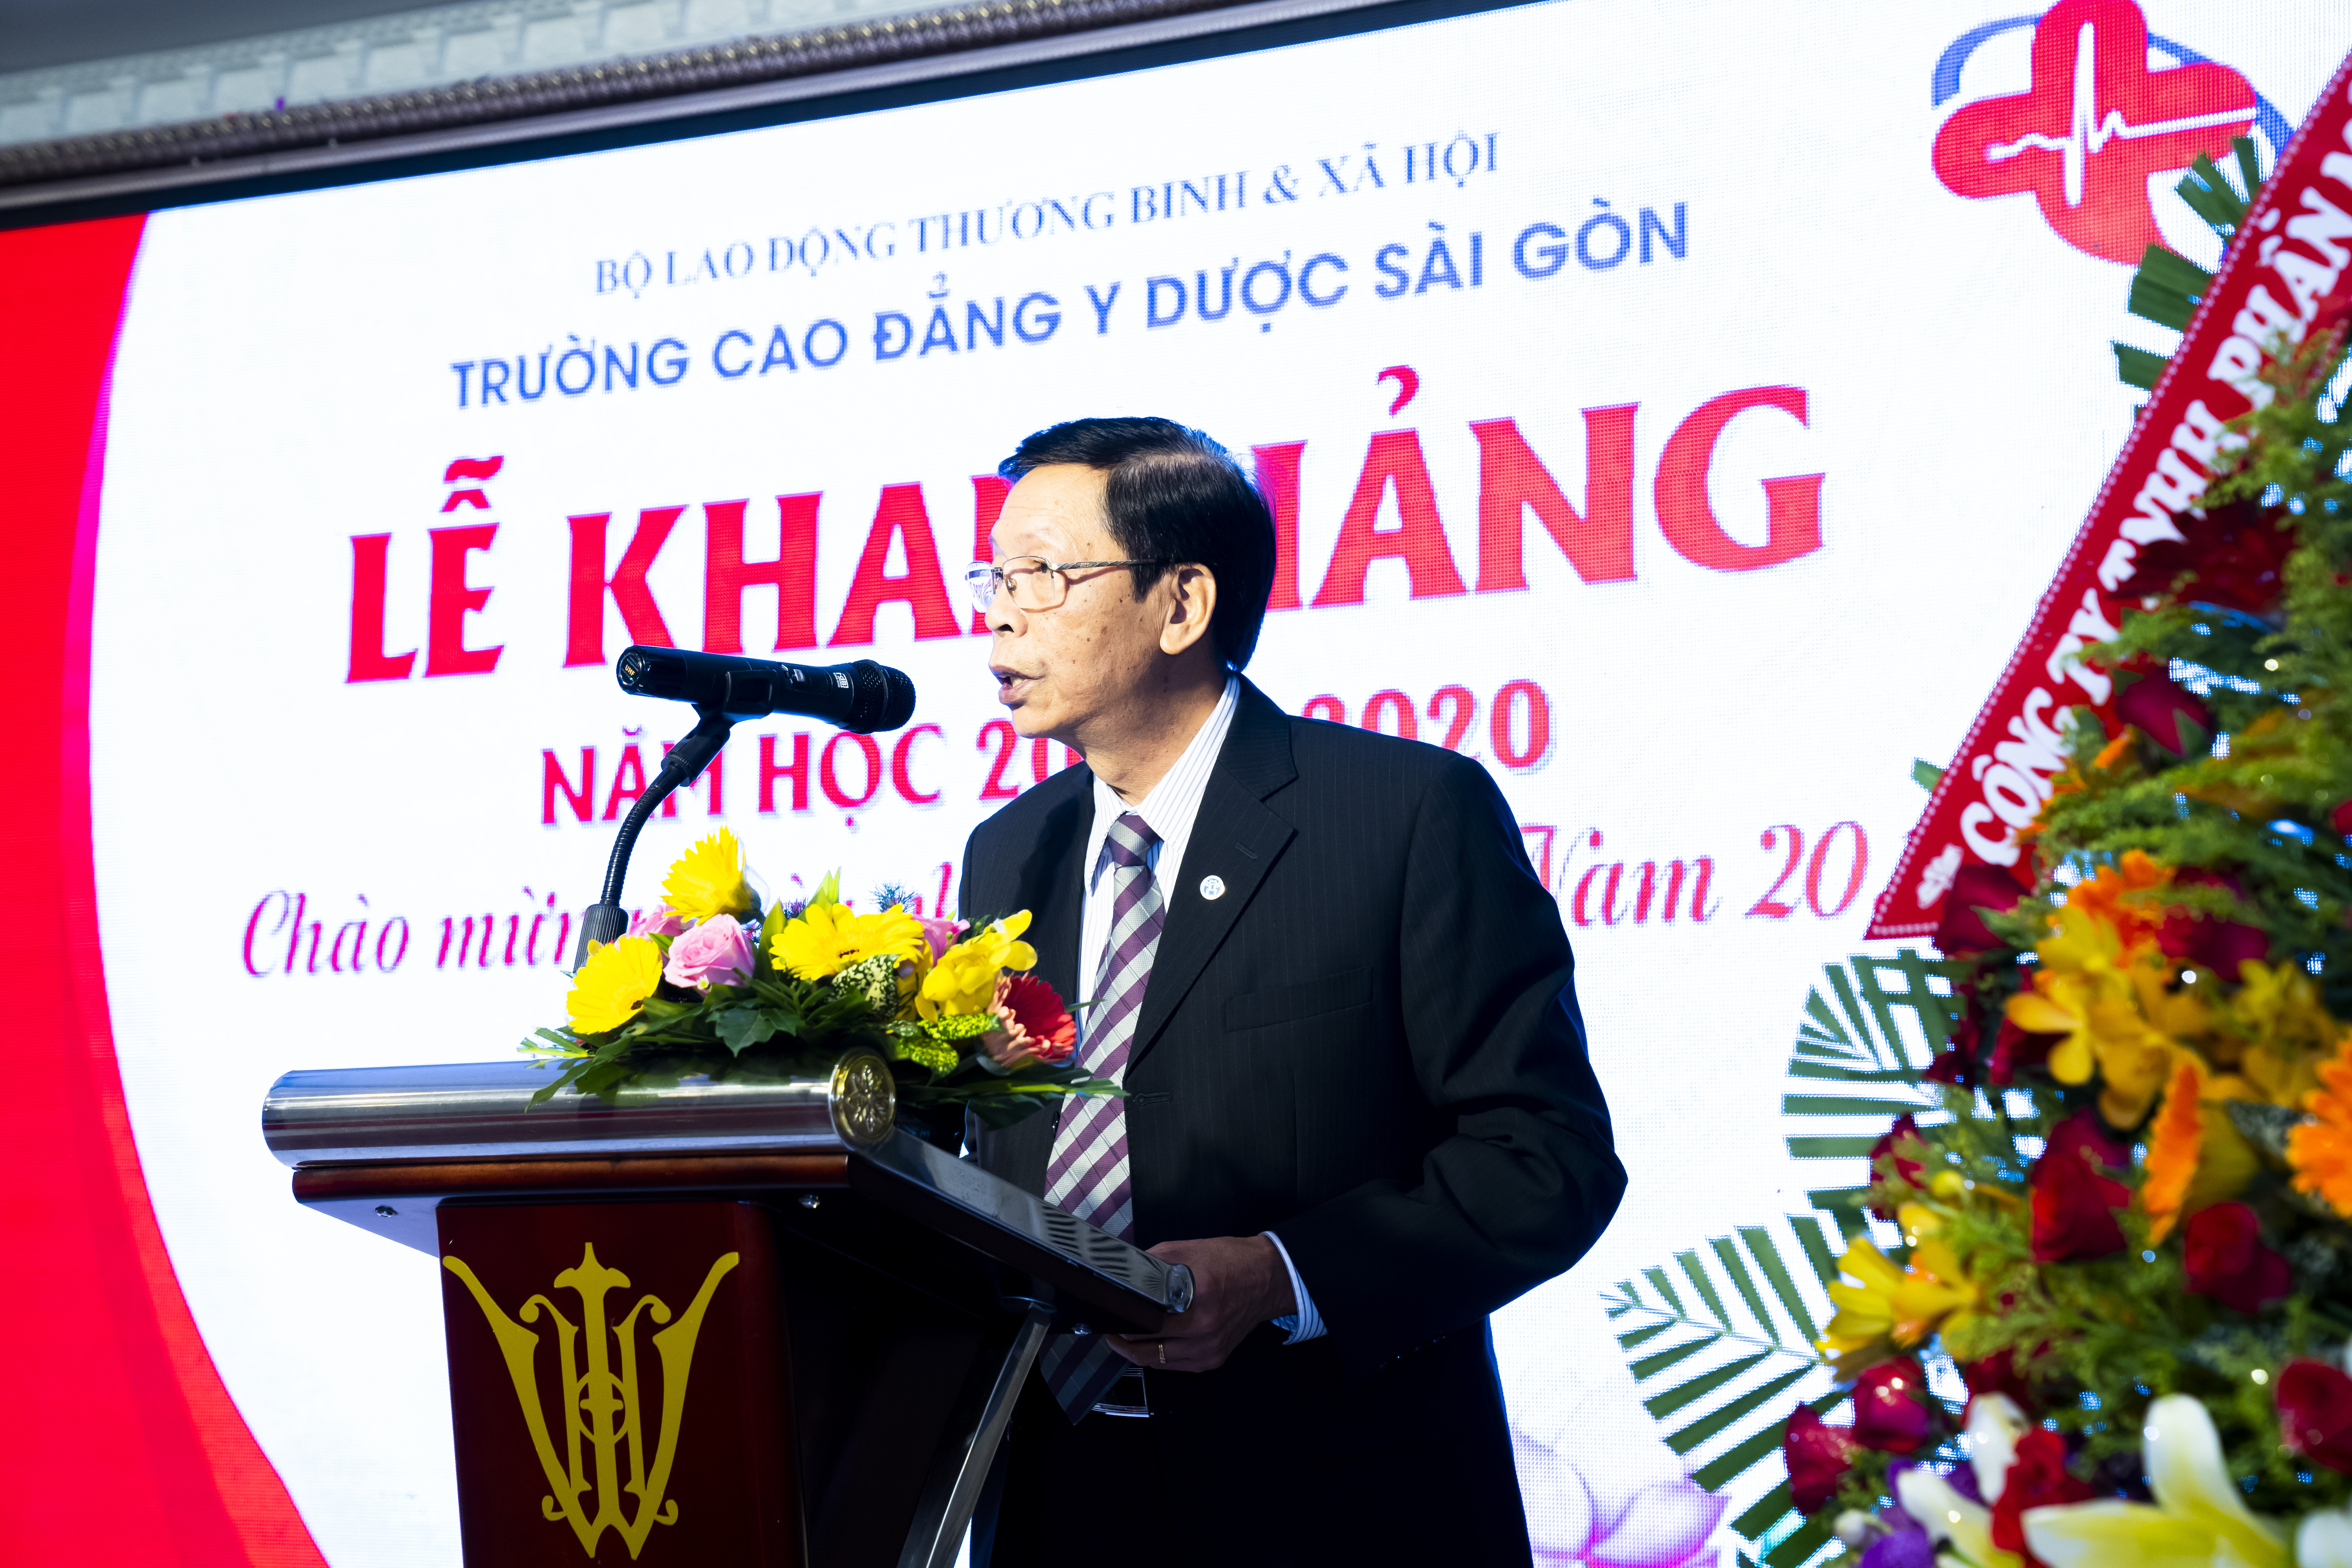 PGS. TS Nguyễn Mạnh Hùng - Nguyên Hiệu trưởng Trường Cao đẳng Y Dược Sài Gòn phát biểu trong buổi lễ Chào đón năm học mới 2019 – 2020